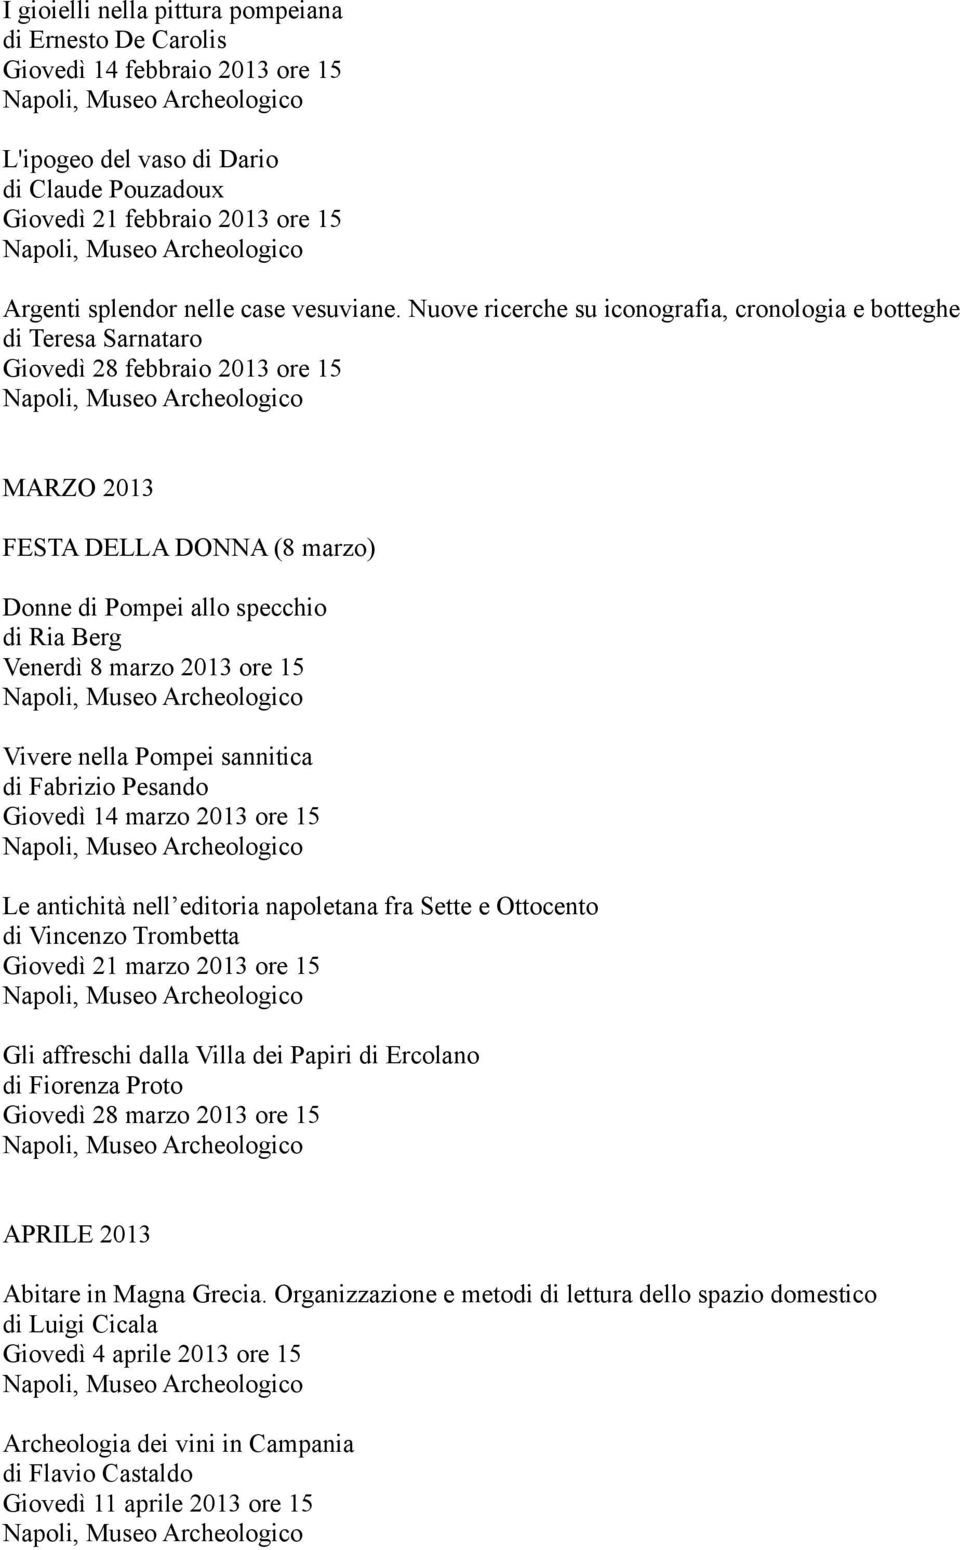 Nuove ricerche su iconografia, cronologia e botteghe di Teresa Sarnataro Giovedì 28 febbraio 2013 ore 15 MARZO 2013 FESTA DELLA DONNA (8 marzo) Donne di Pompei allo specchio di Ria Berg Venerdì 8